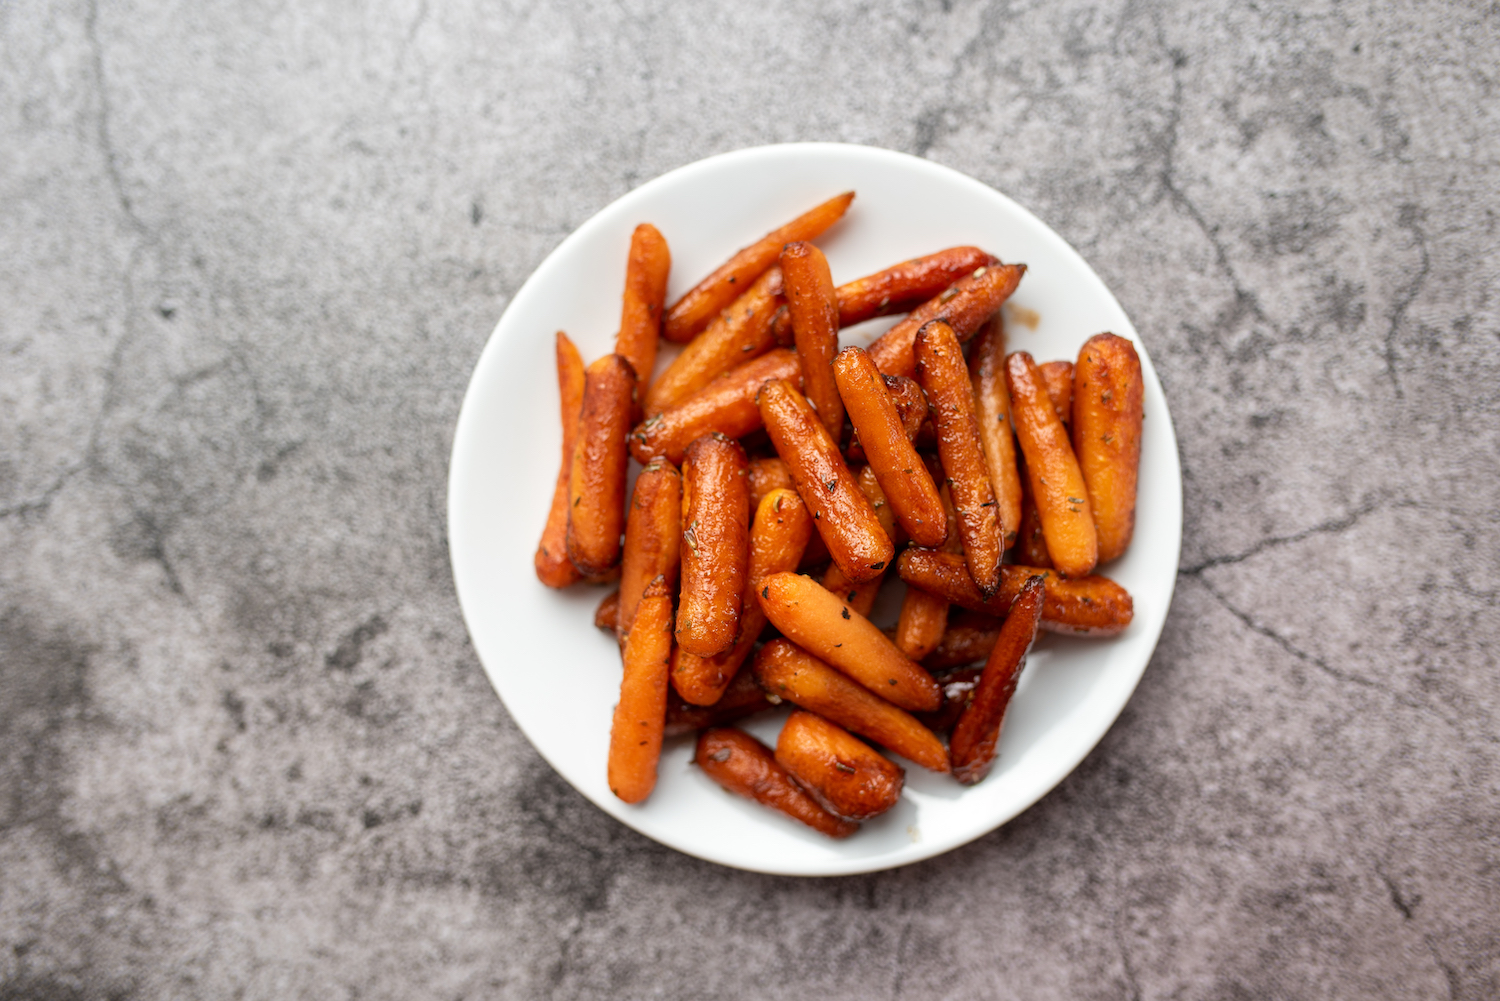 Maple and Orange Glazed Roasted Carrots